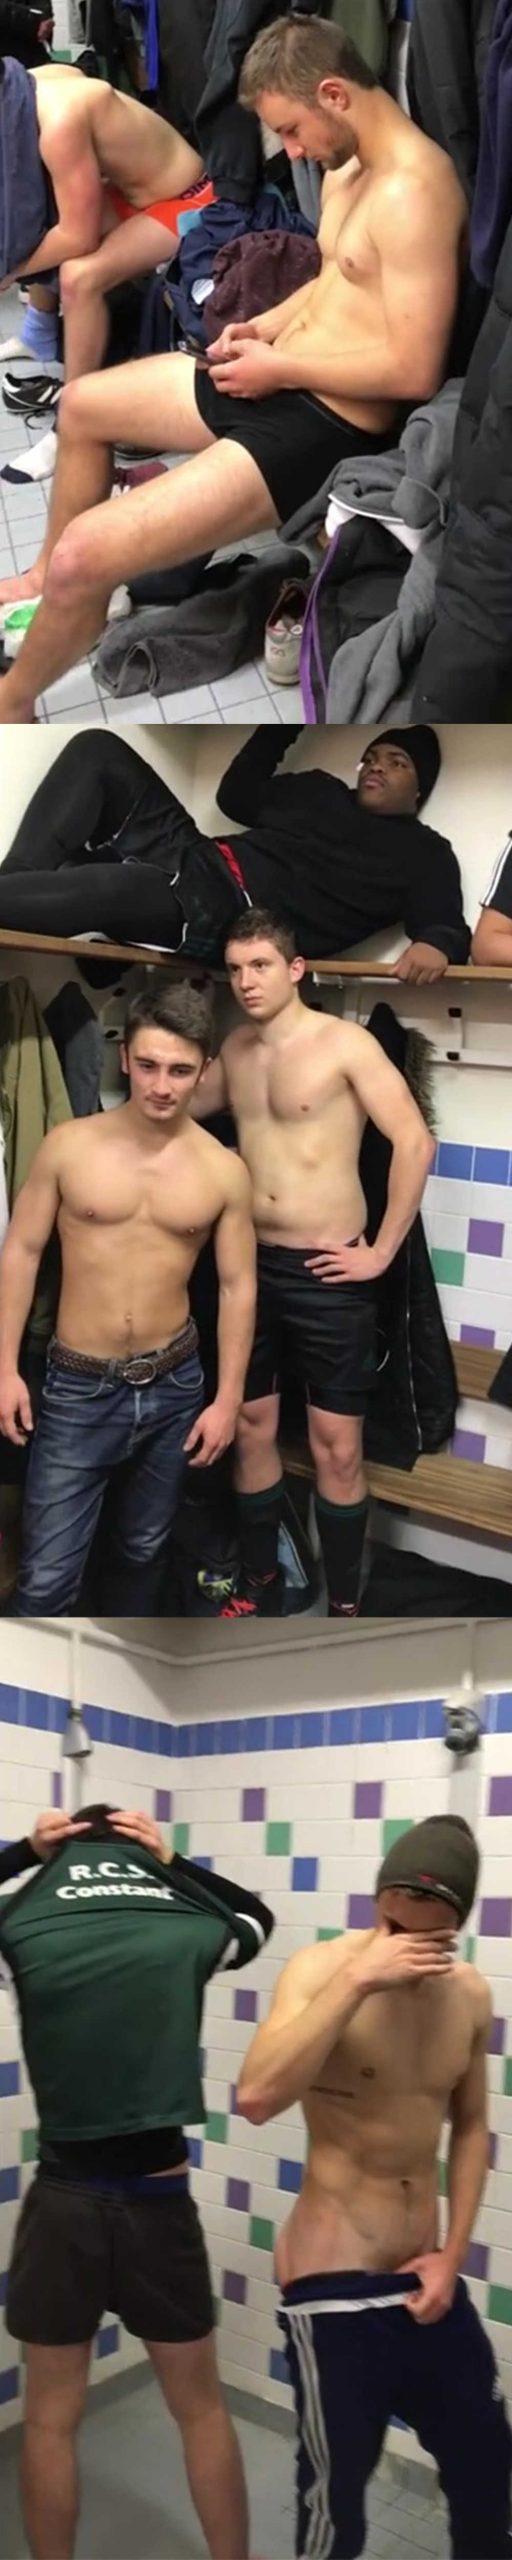 guys naked in locker room mannequin challenge